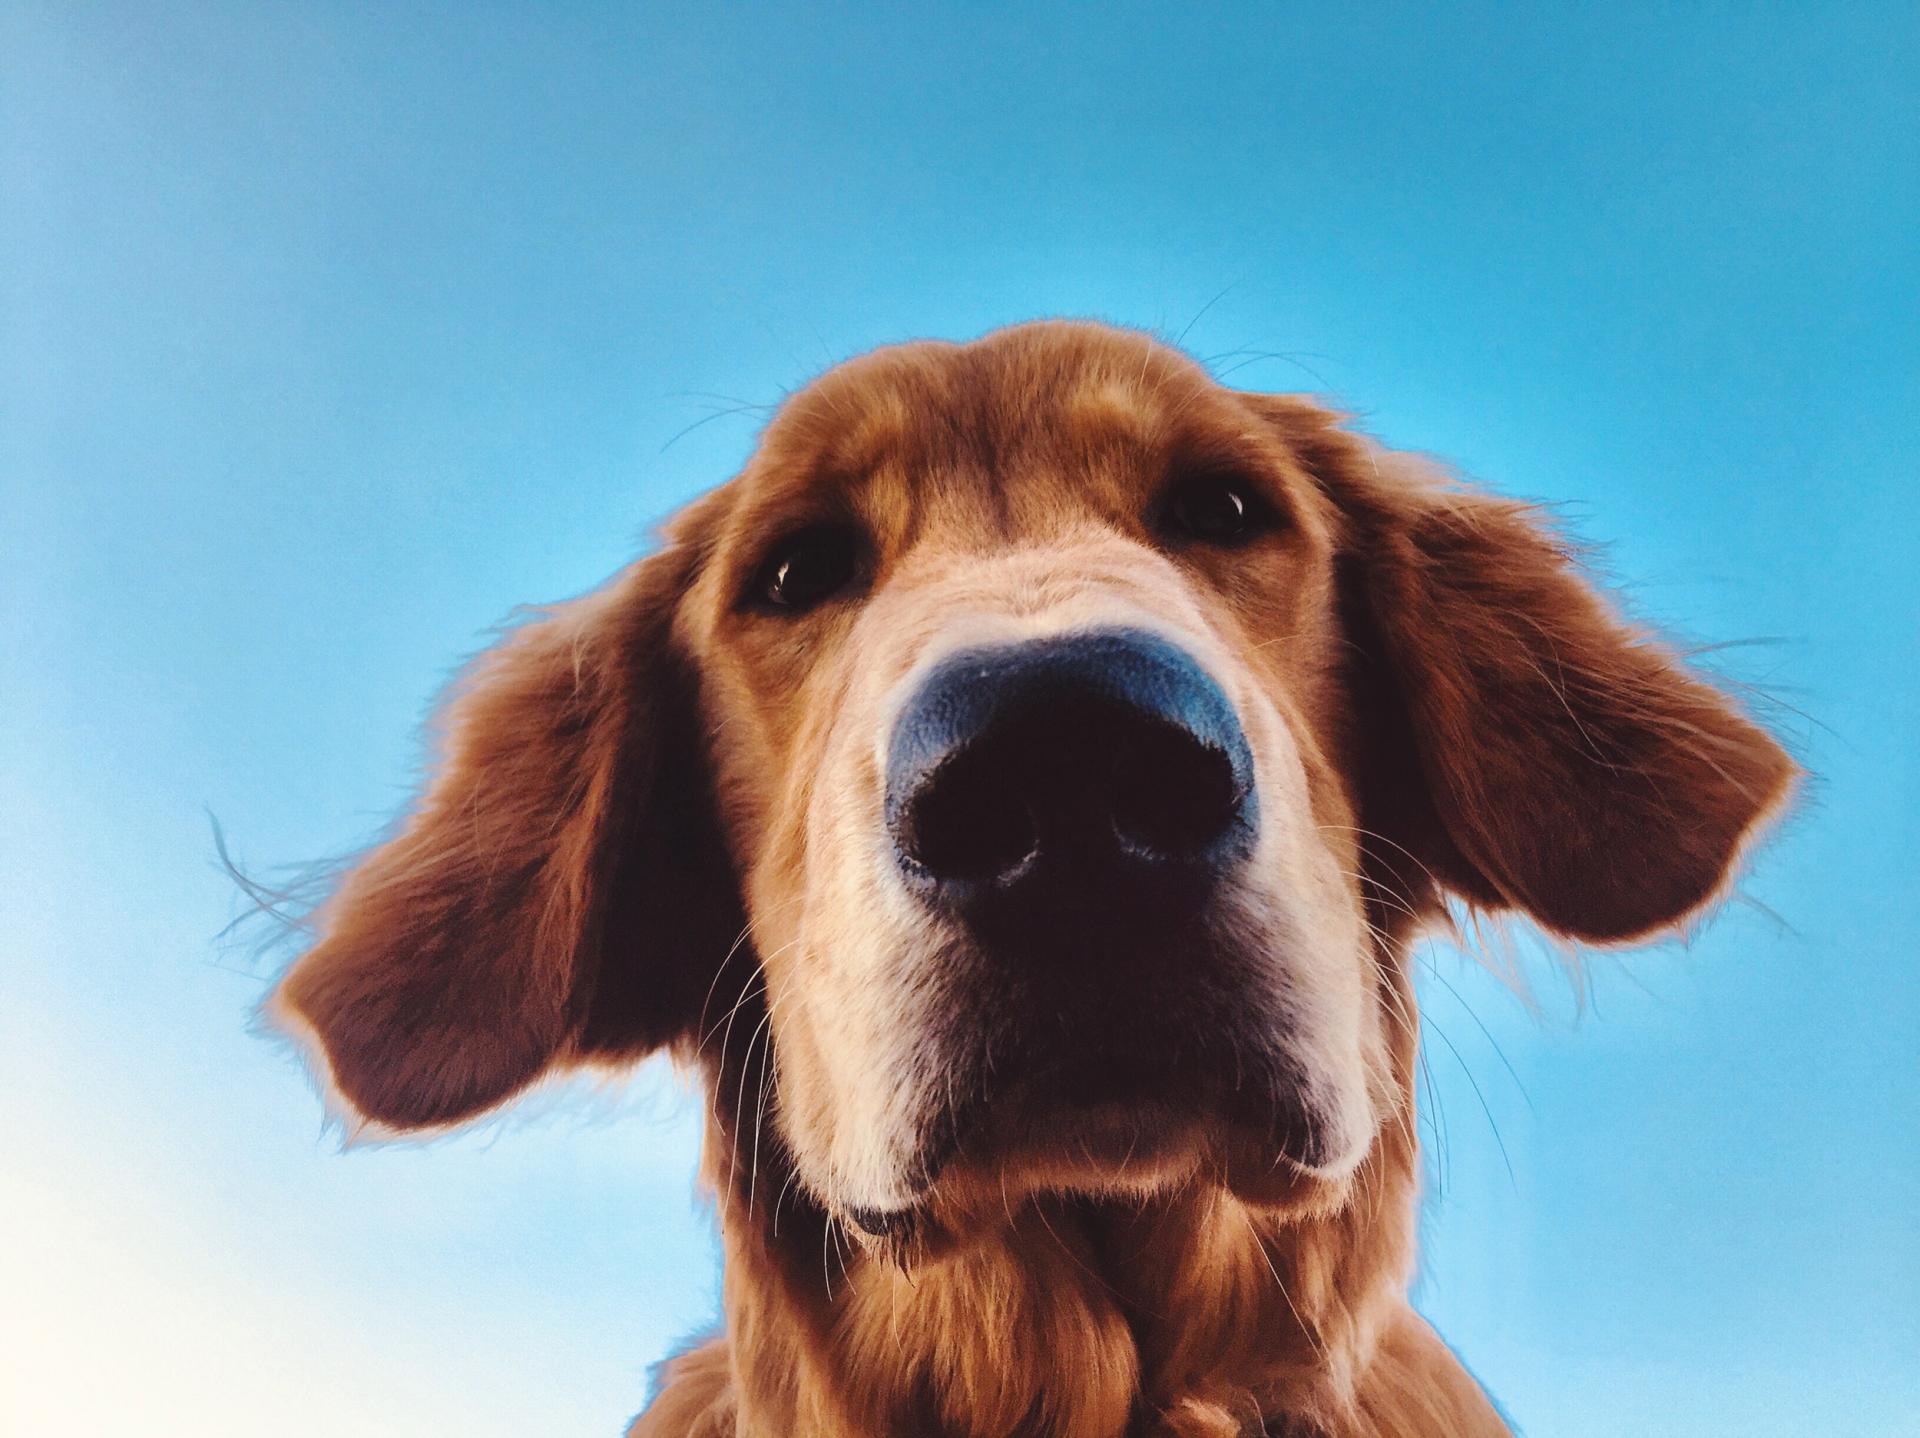 Con mắt thứ 3 của chó nằm ở Một nghiên cứu mới lần đầu tiên tiết lộ cách thức mà khứu giác và thị giác liên kết chặt chẽ trong não của loài chóđâu - Ảnh 1